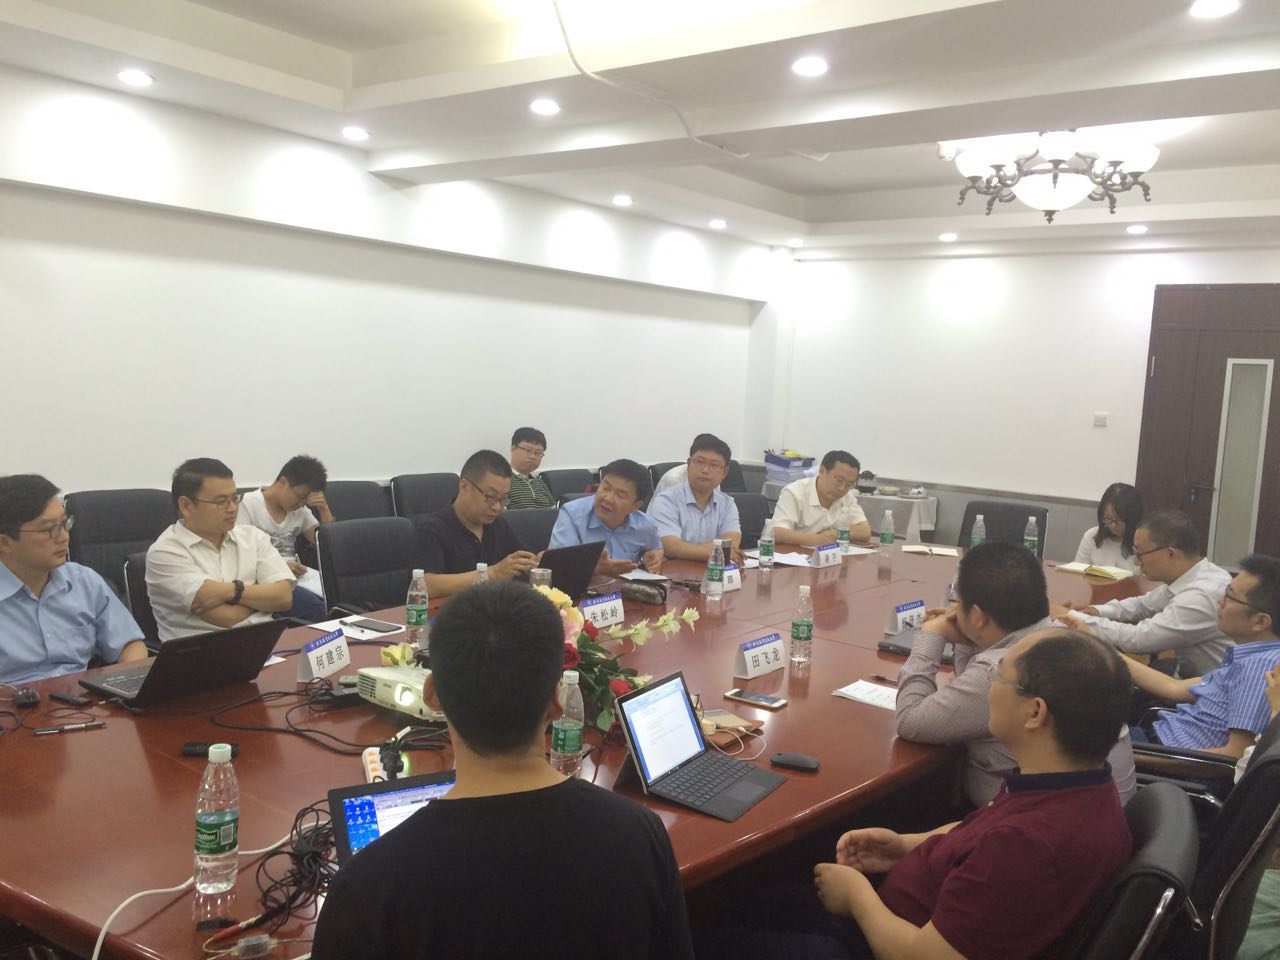 第二期一国两制精英沙龙在北京航空航天大学举行